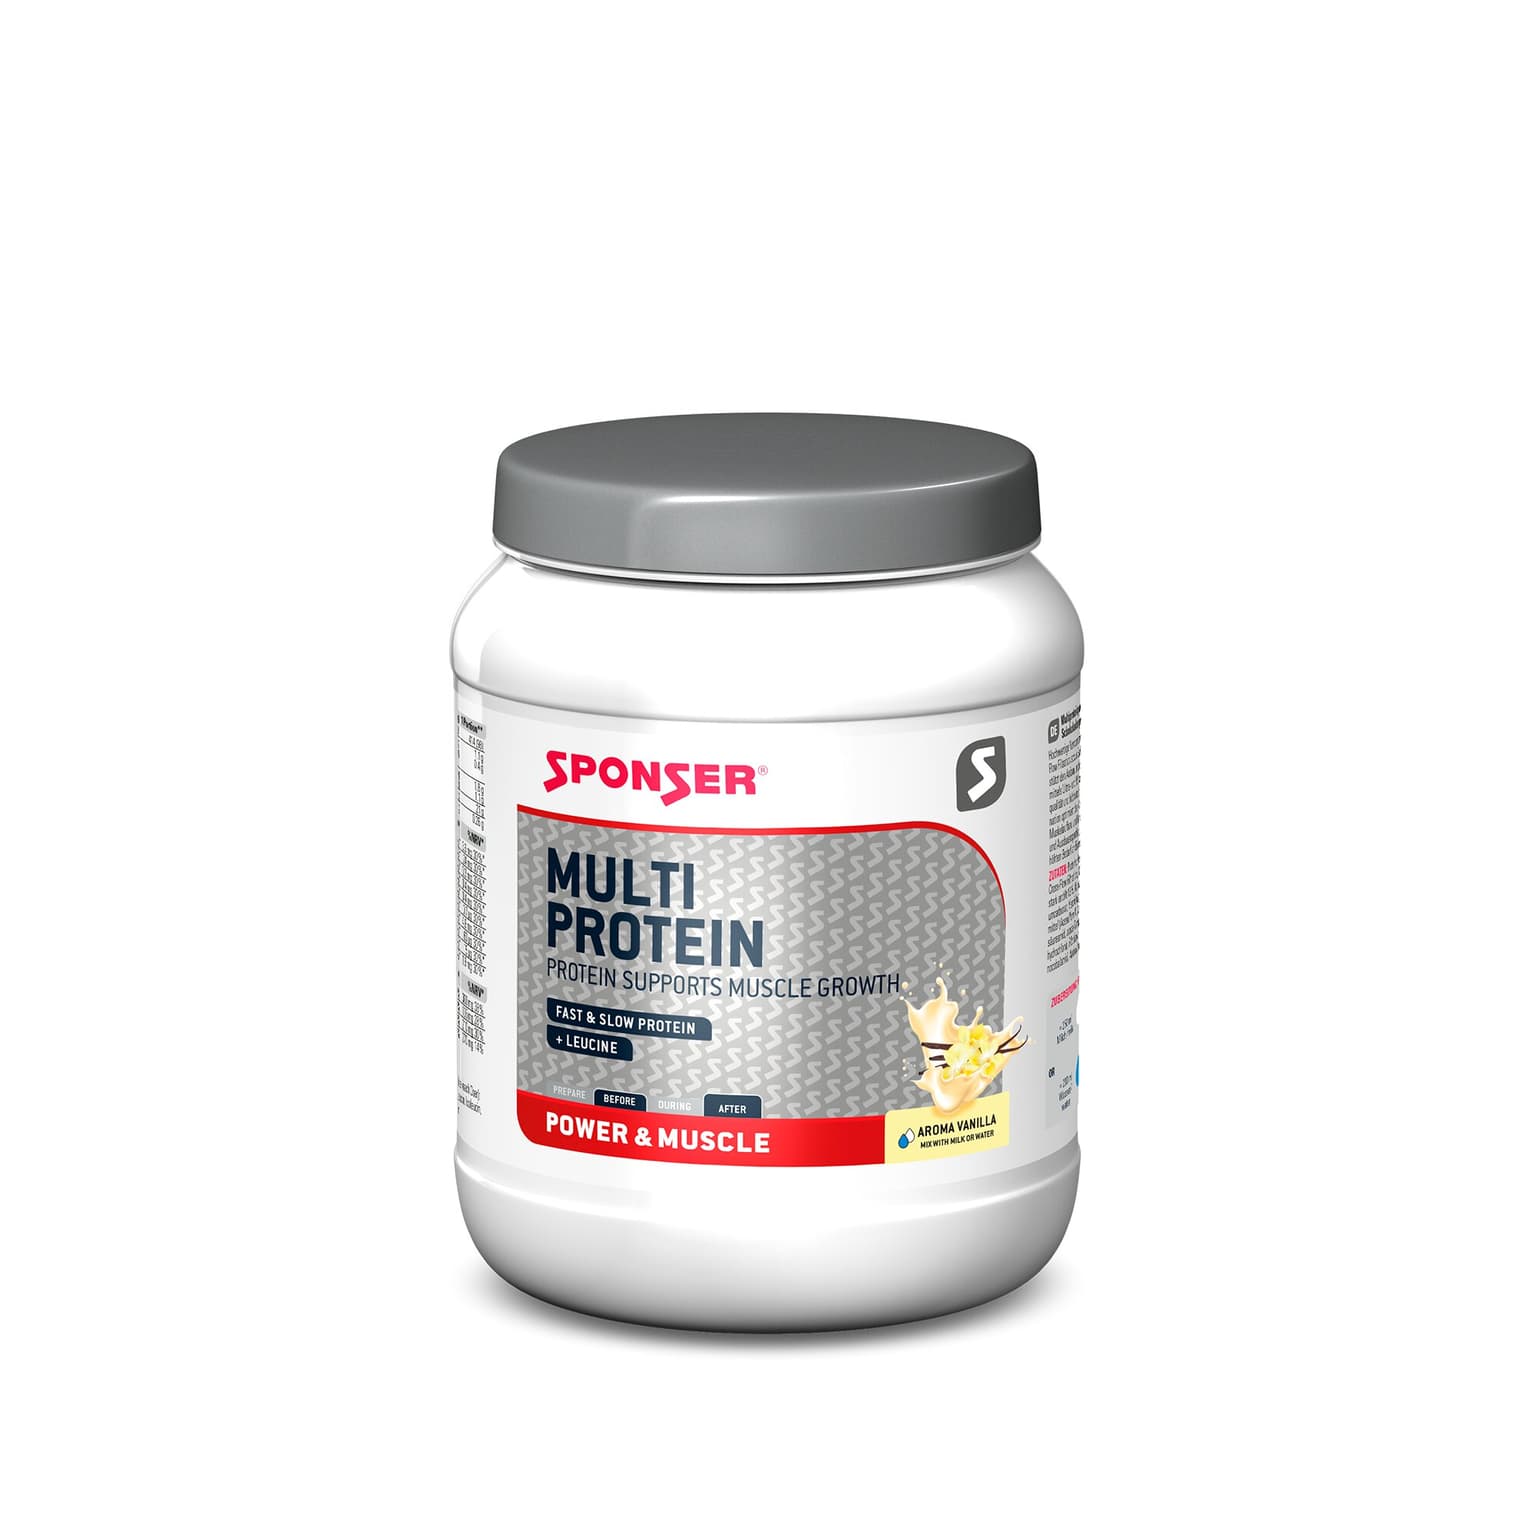 Sponser Sponser Multi Protein Vanille 425 g Polvere proteico 1